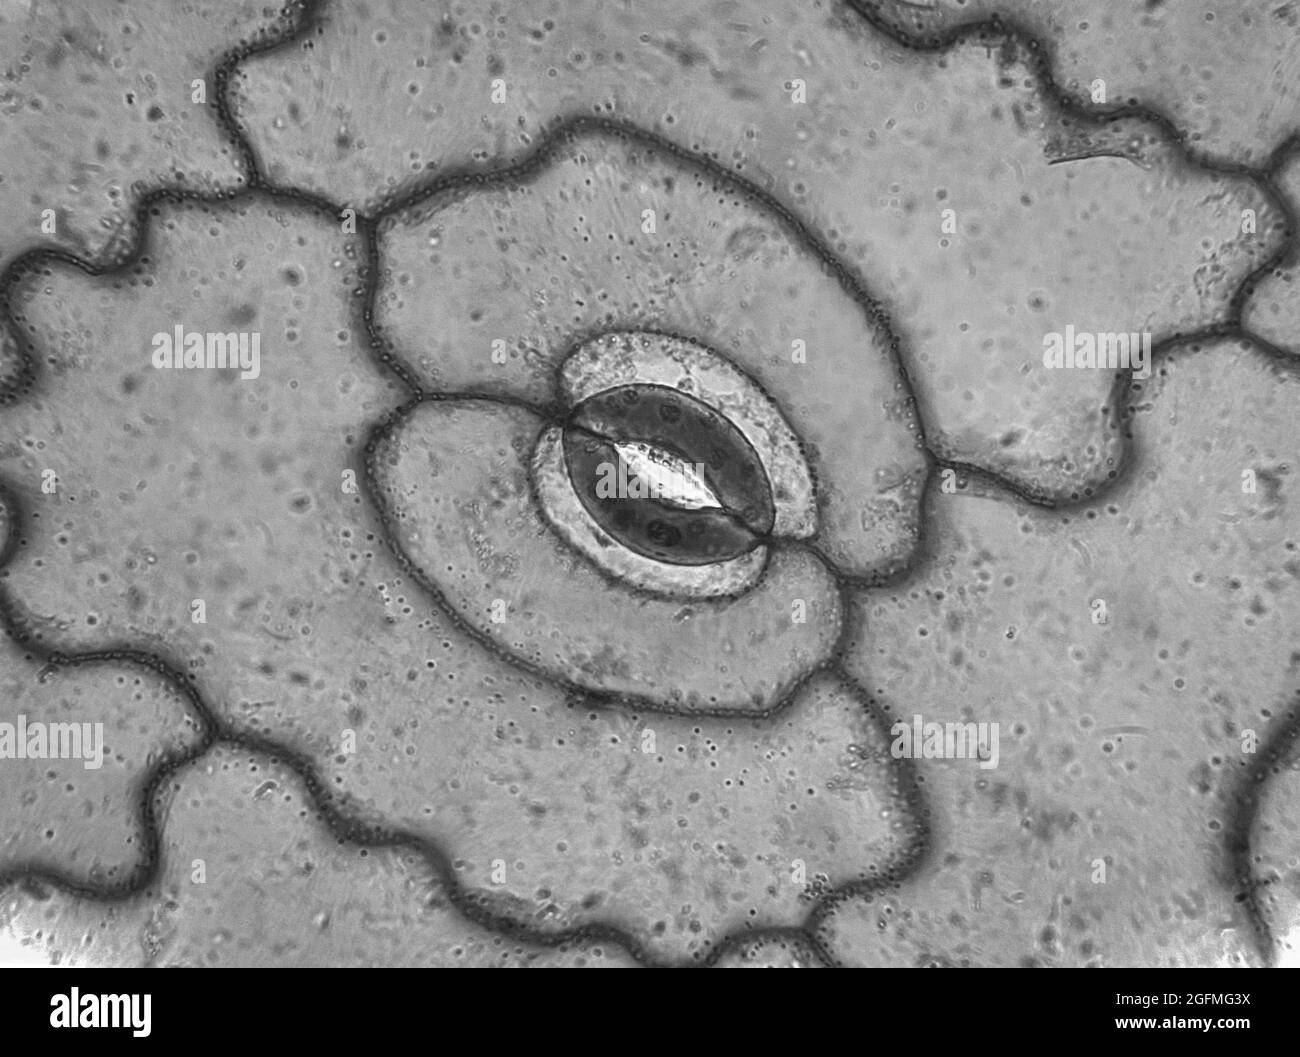 Mikroskopische Aufnahme von Stomata auf dem Blatt der Portulaca oleracea Pflanze Stockfoto